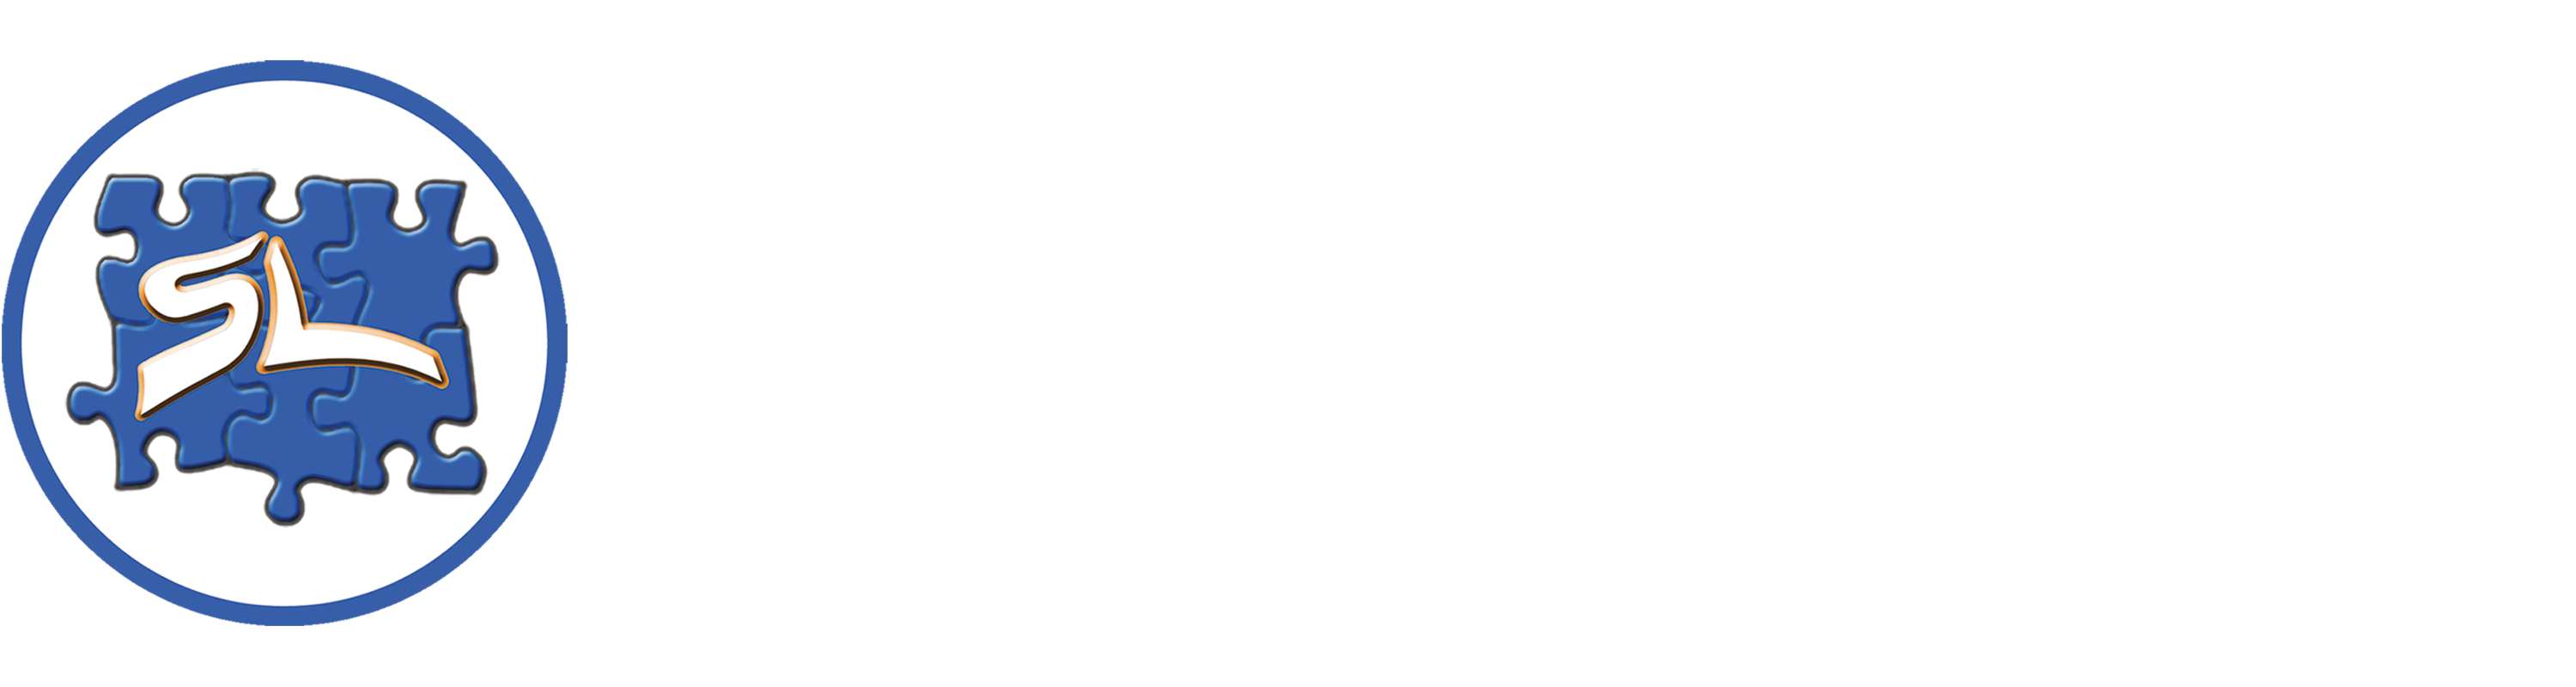 Sint-Lambertusinstituut - webwinkel